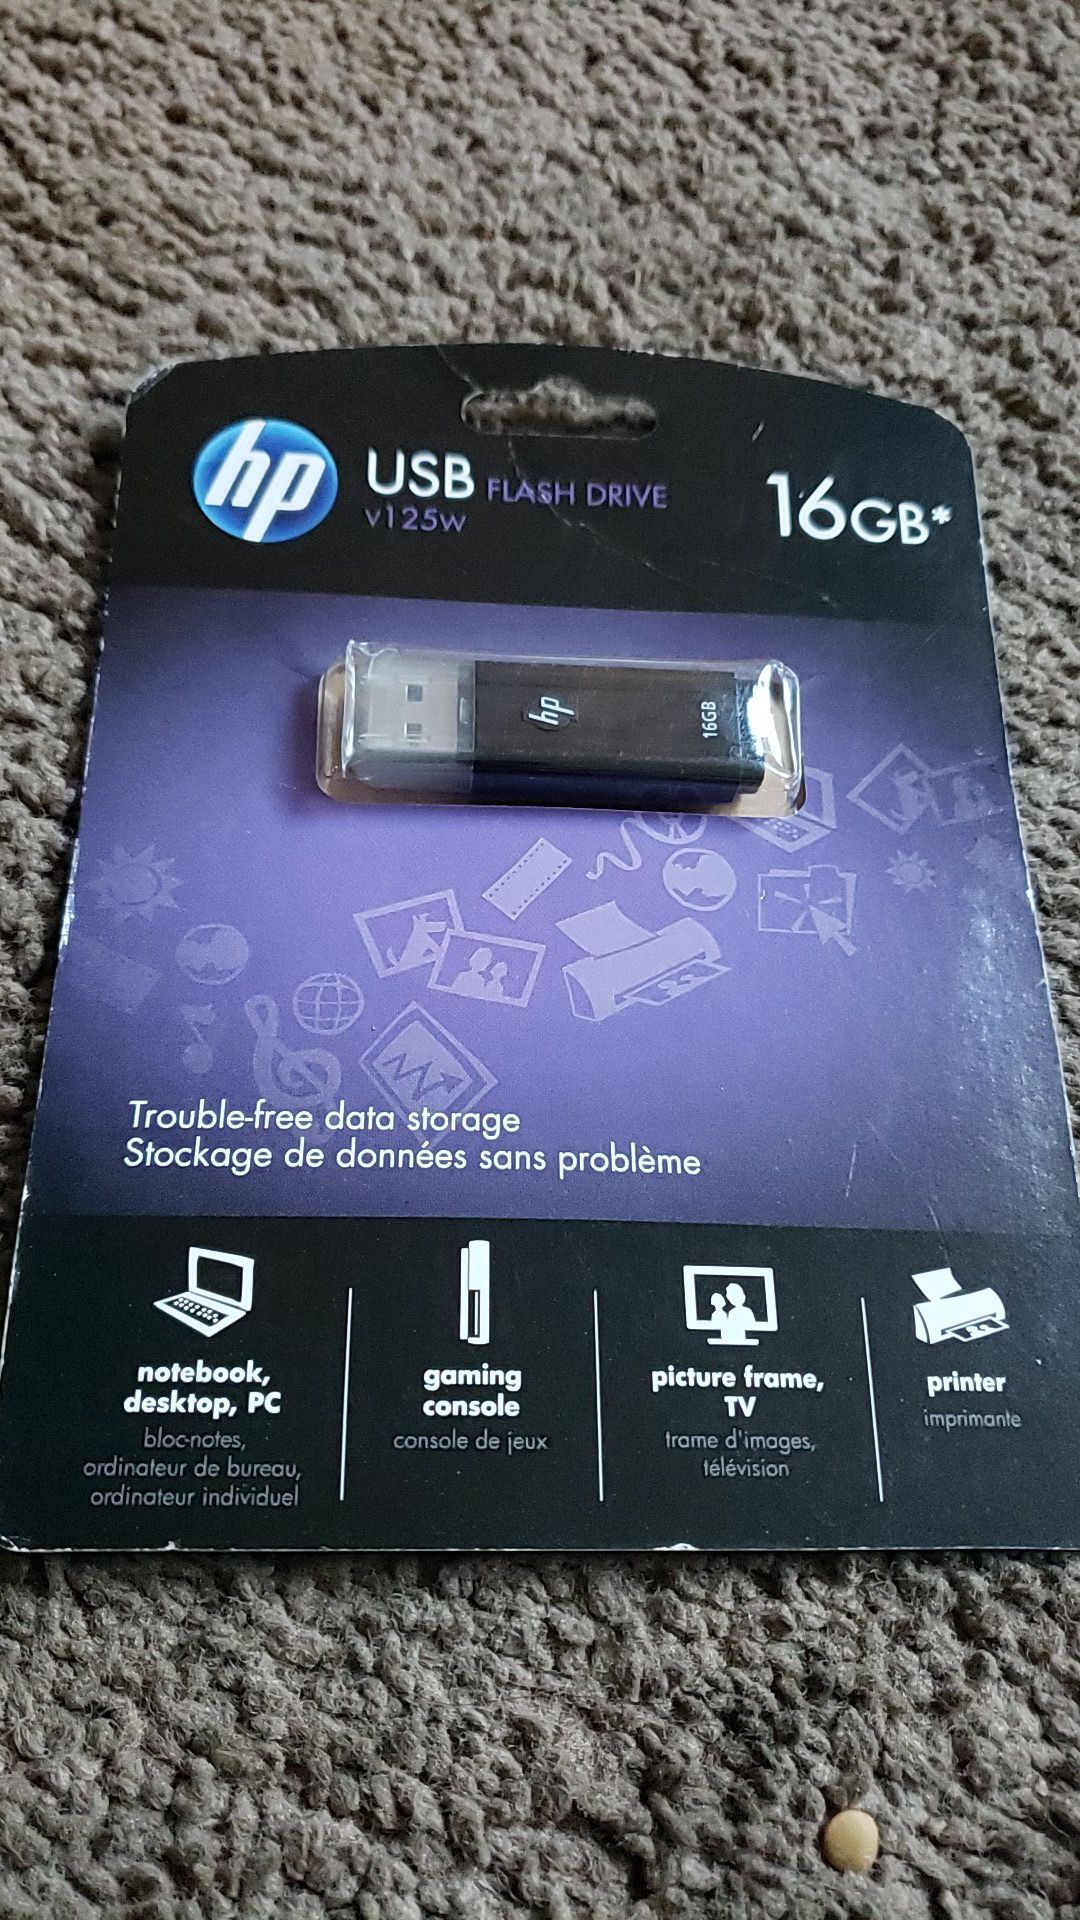 Hp USB flash drive